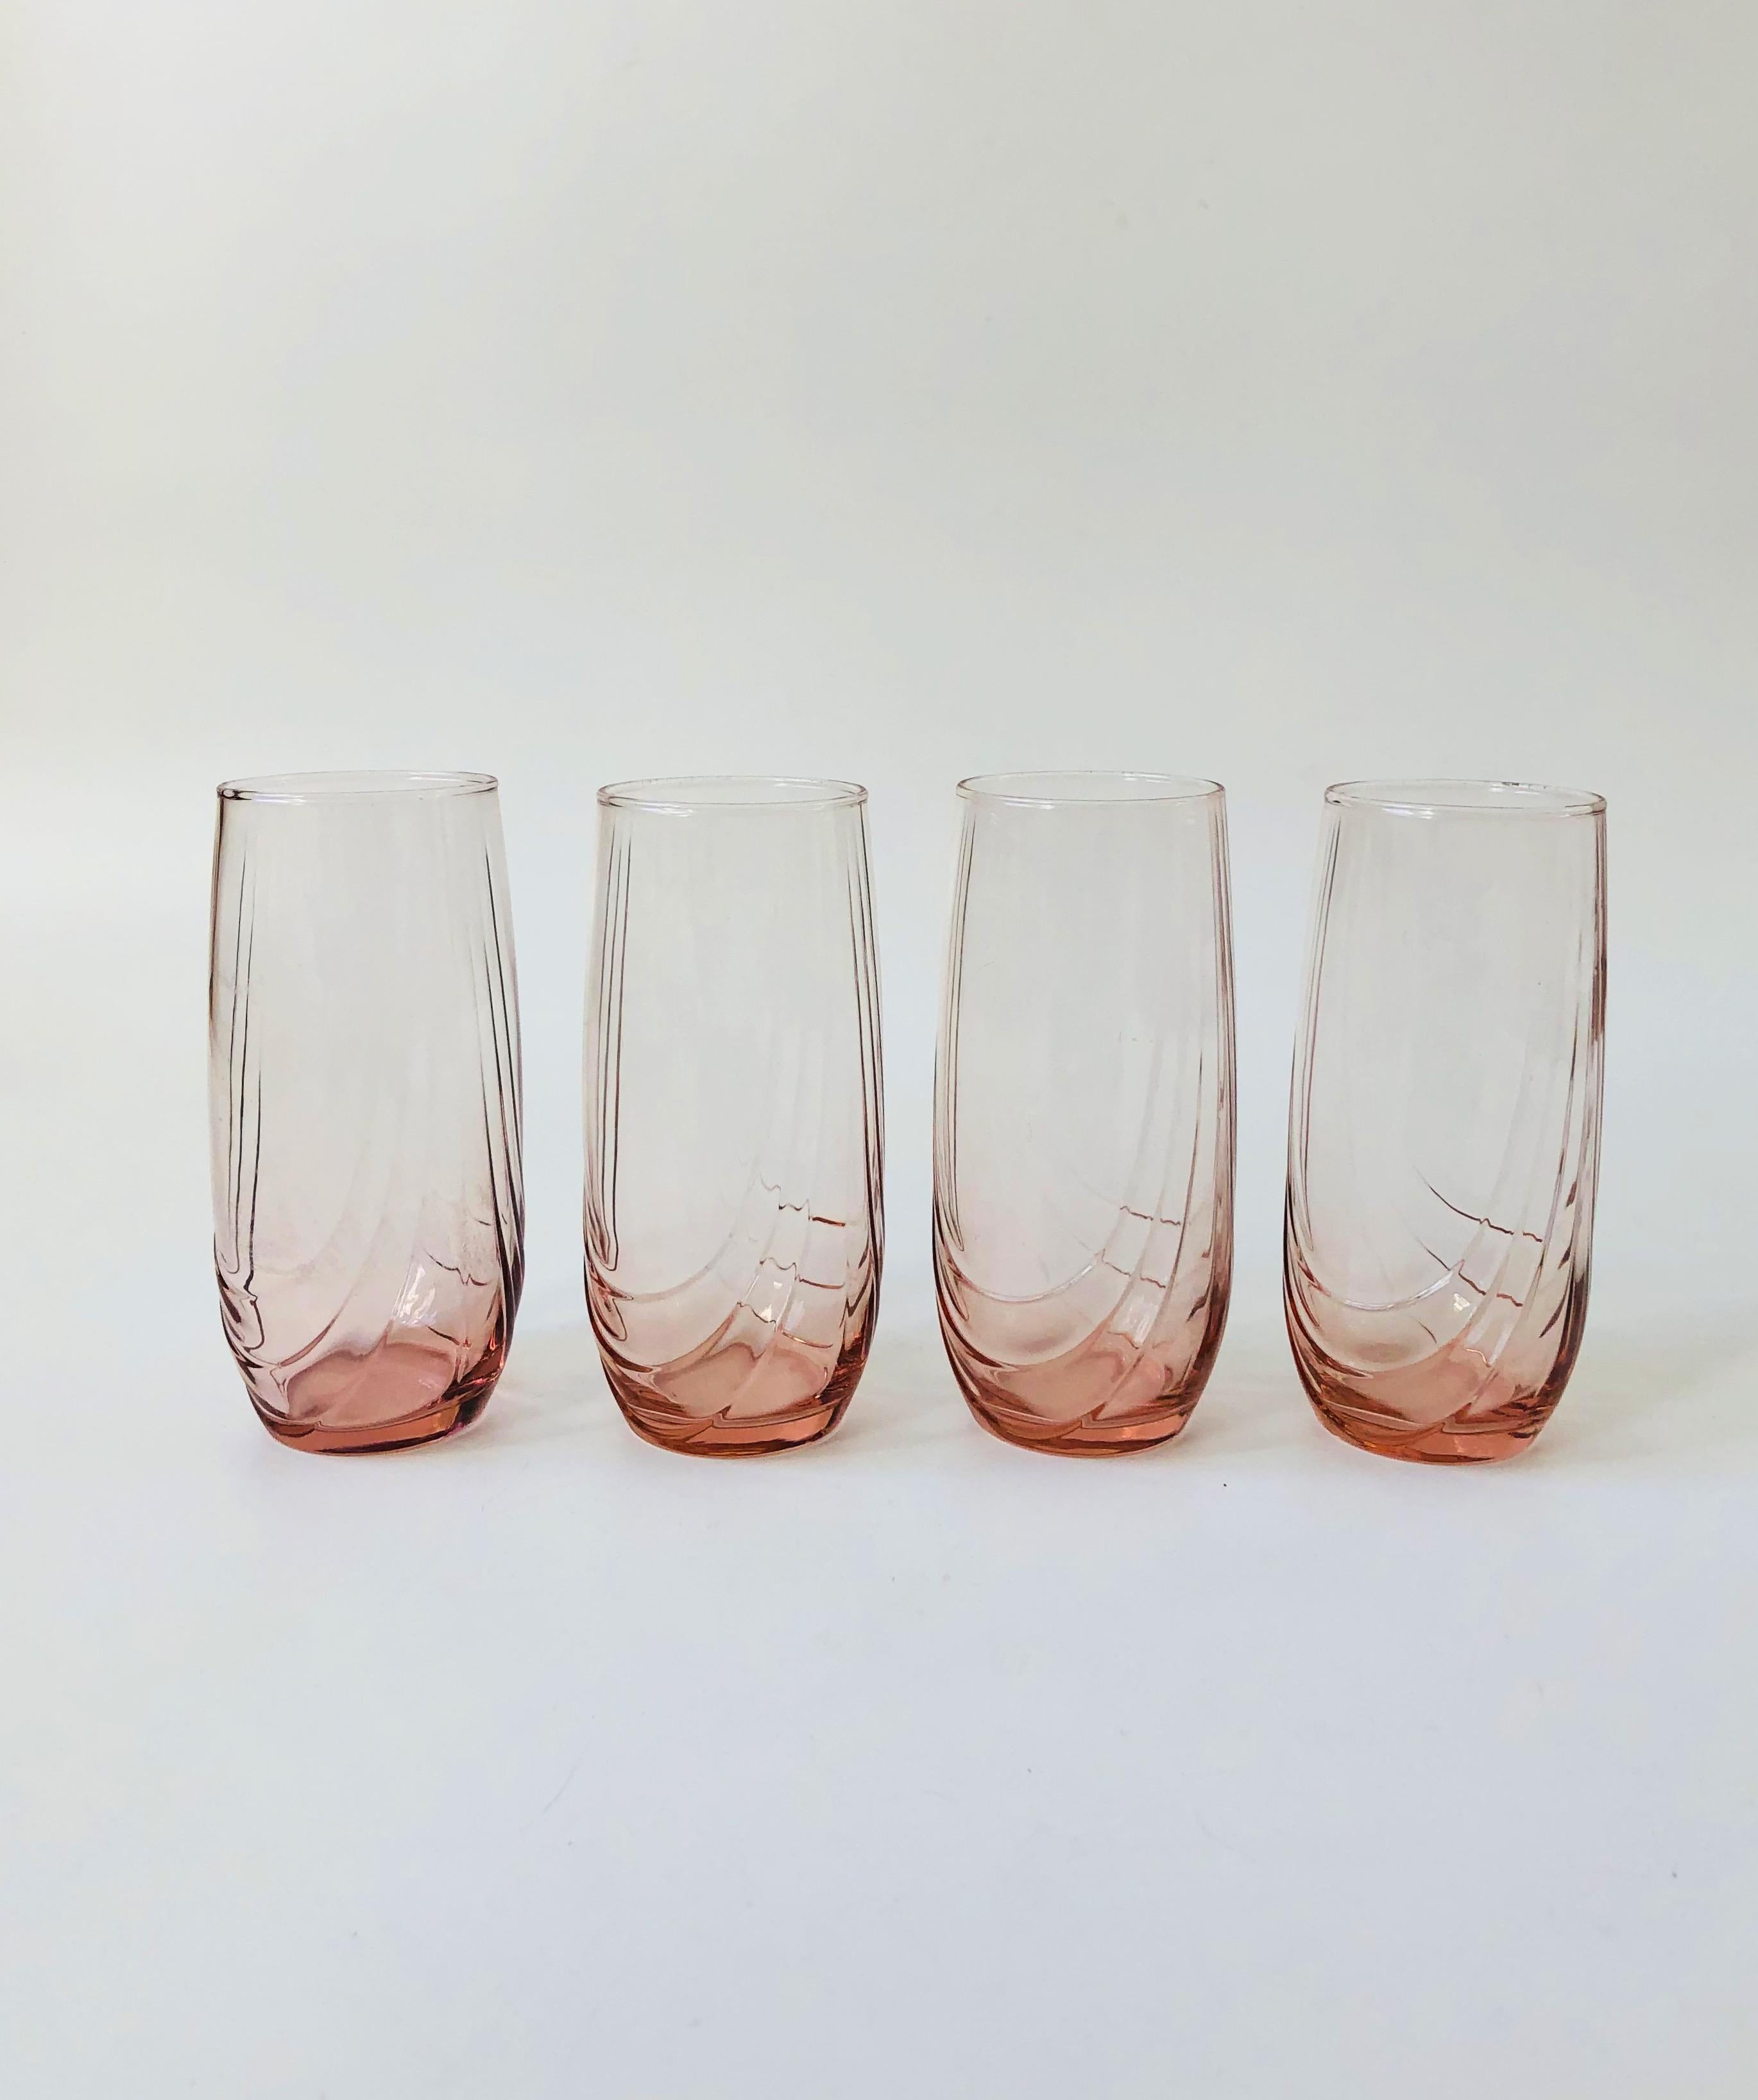 Ein Satz von 4 Highball-Gläsern aus den 1980er Jahren. Schöne blassrosa Farbe mit einer einzigartigen geprägten Details an den Seiten. Perfekt für Cocktails oder alltägliche Wassergläser.
  